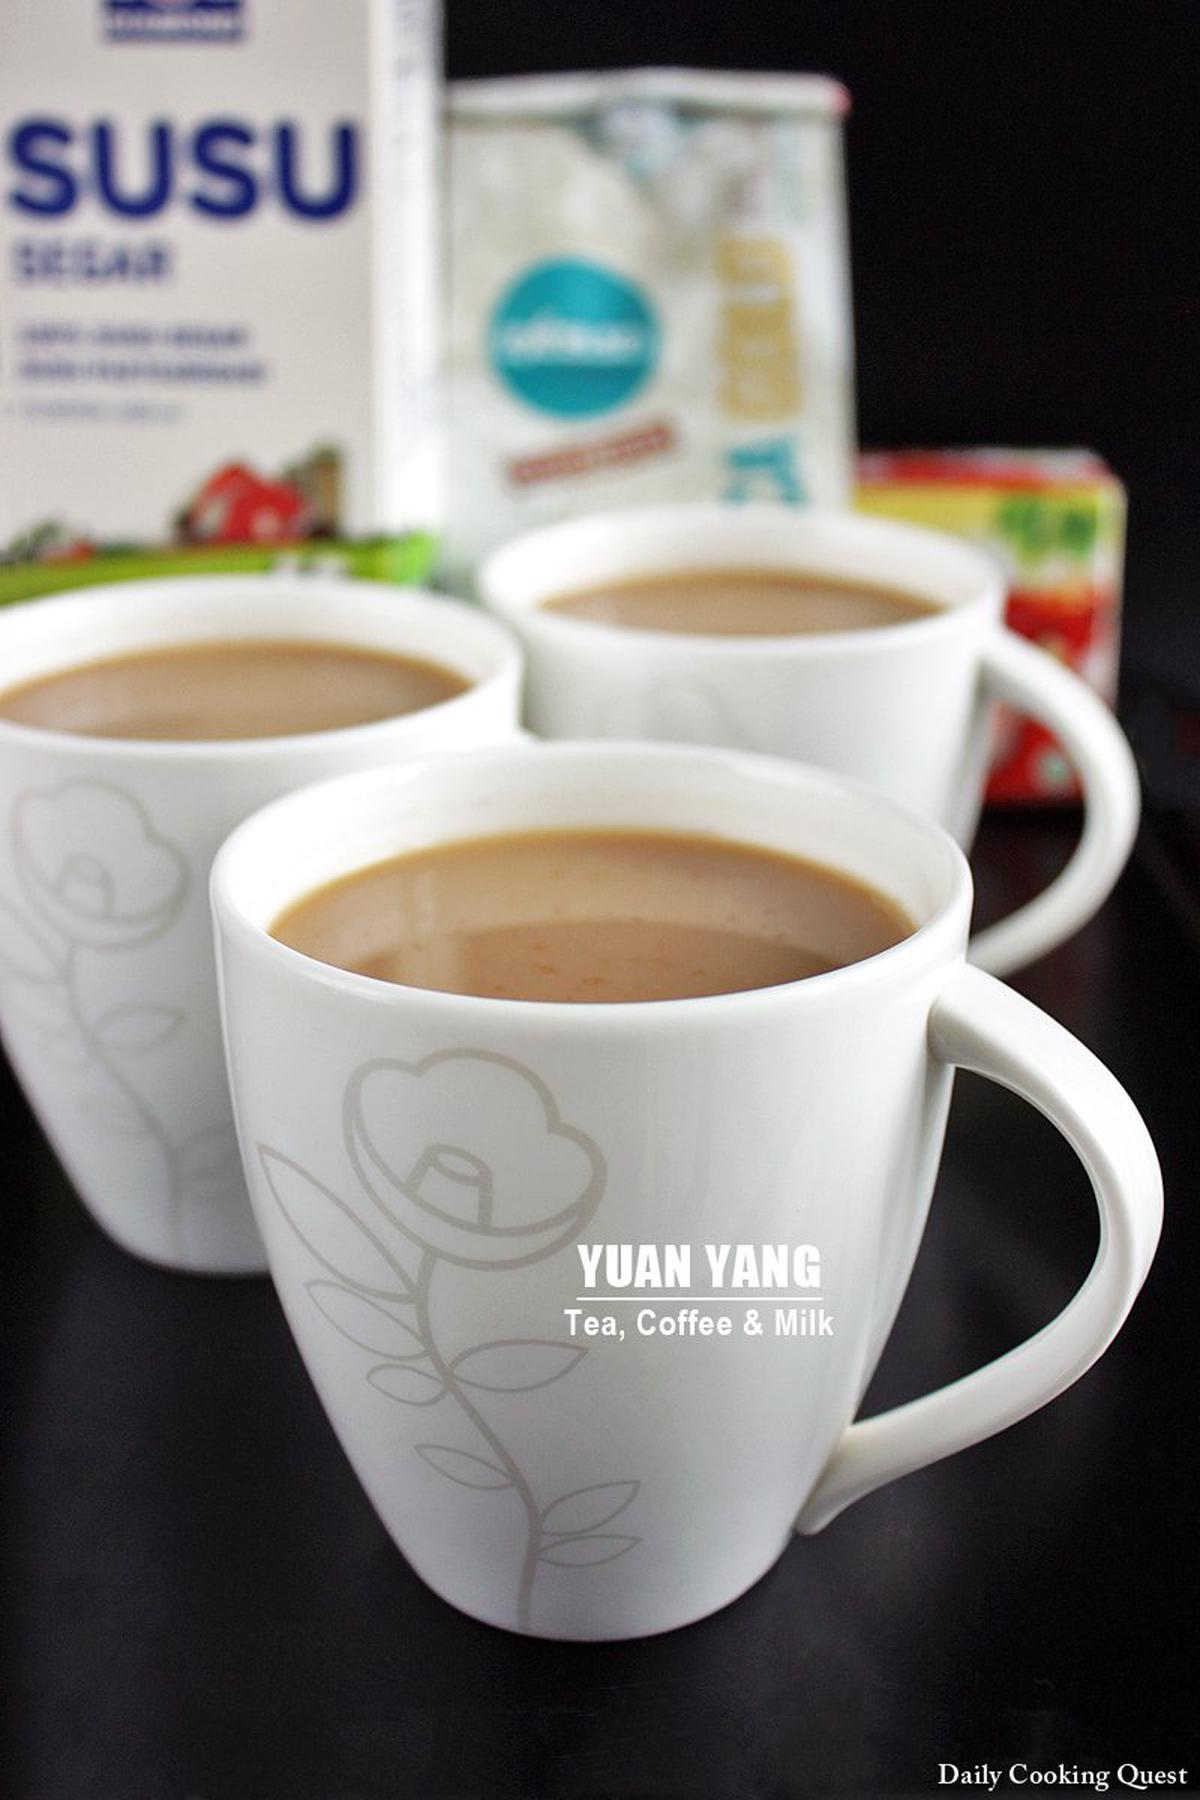 Yuan Yang - Tea, Coffee, and Milk